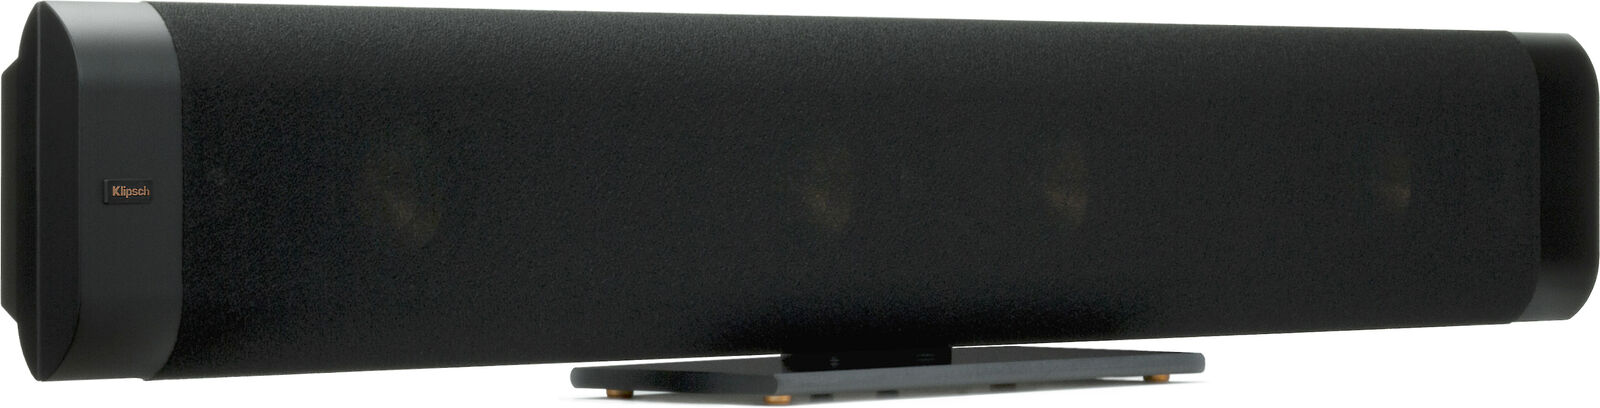 Klipsch RP-440D-SB Passive 3 channel Soundbar